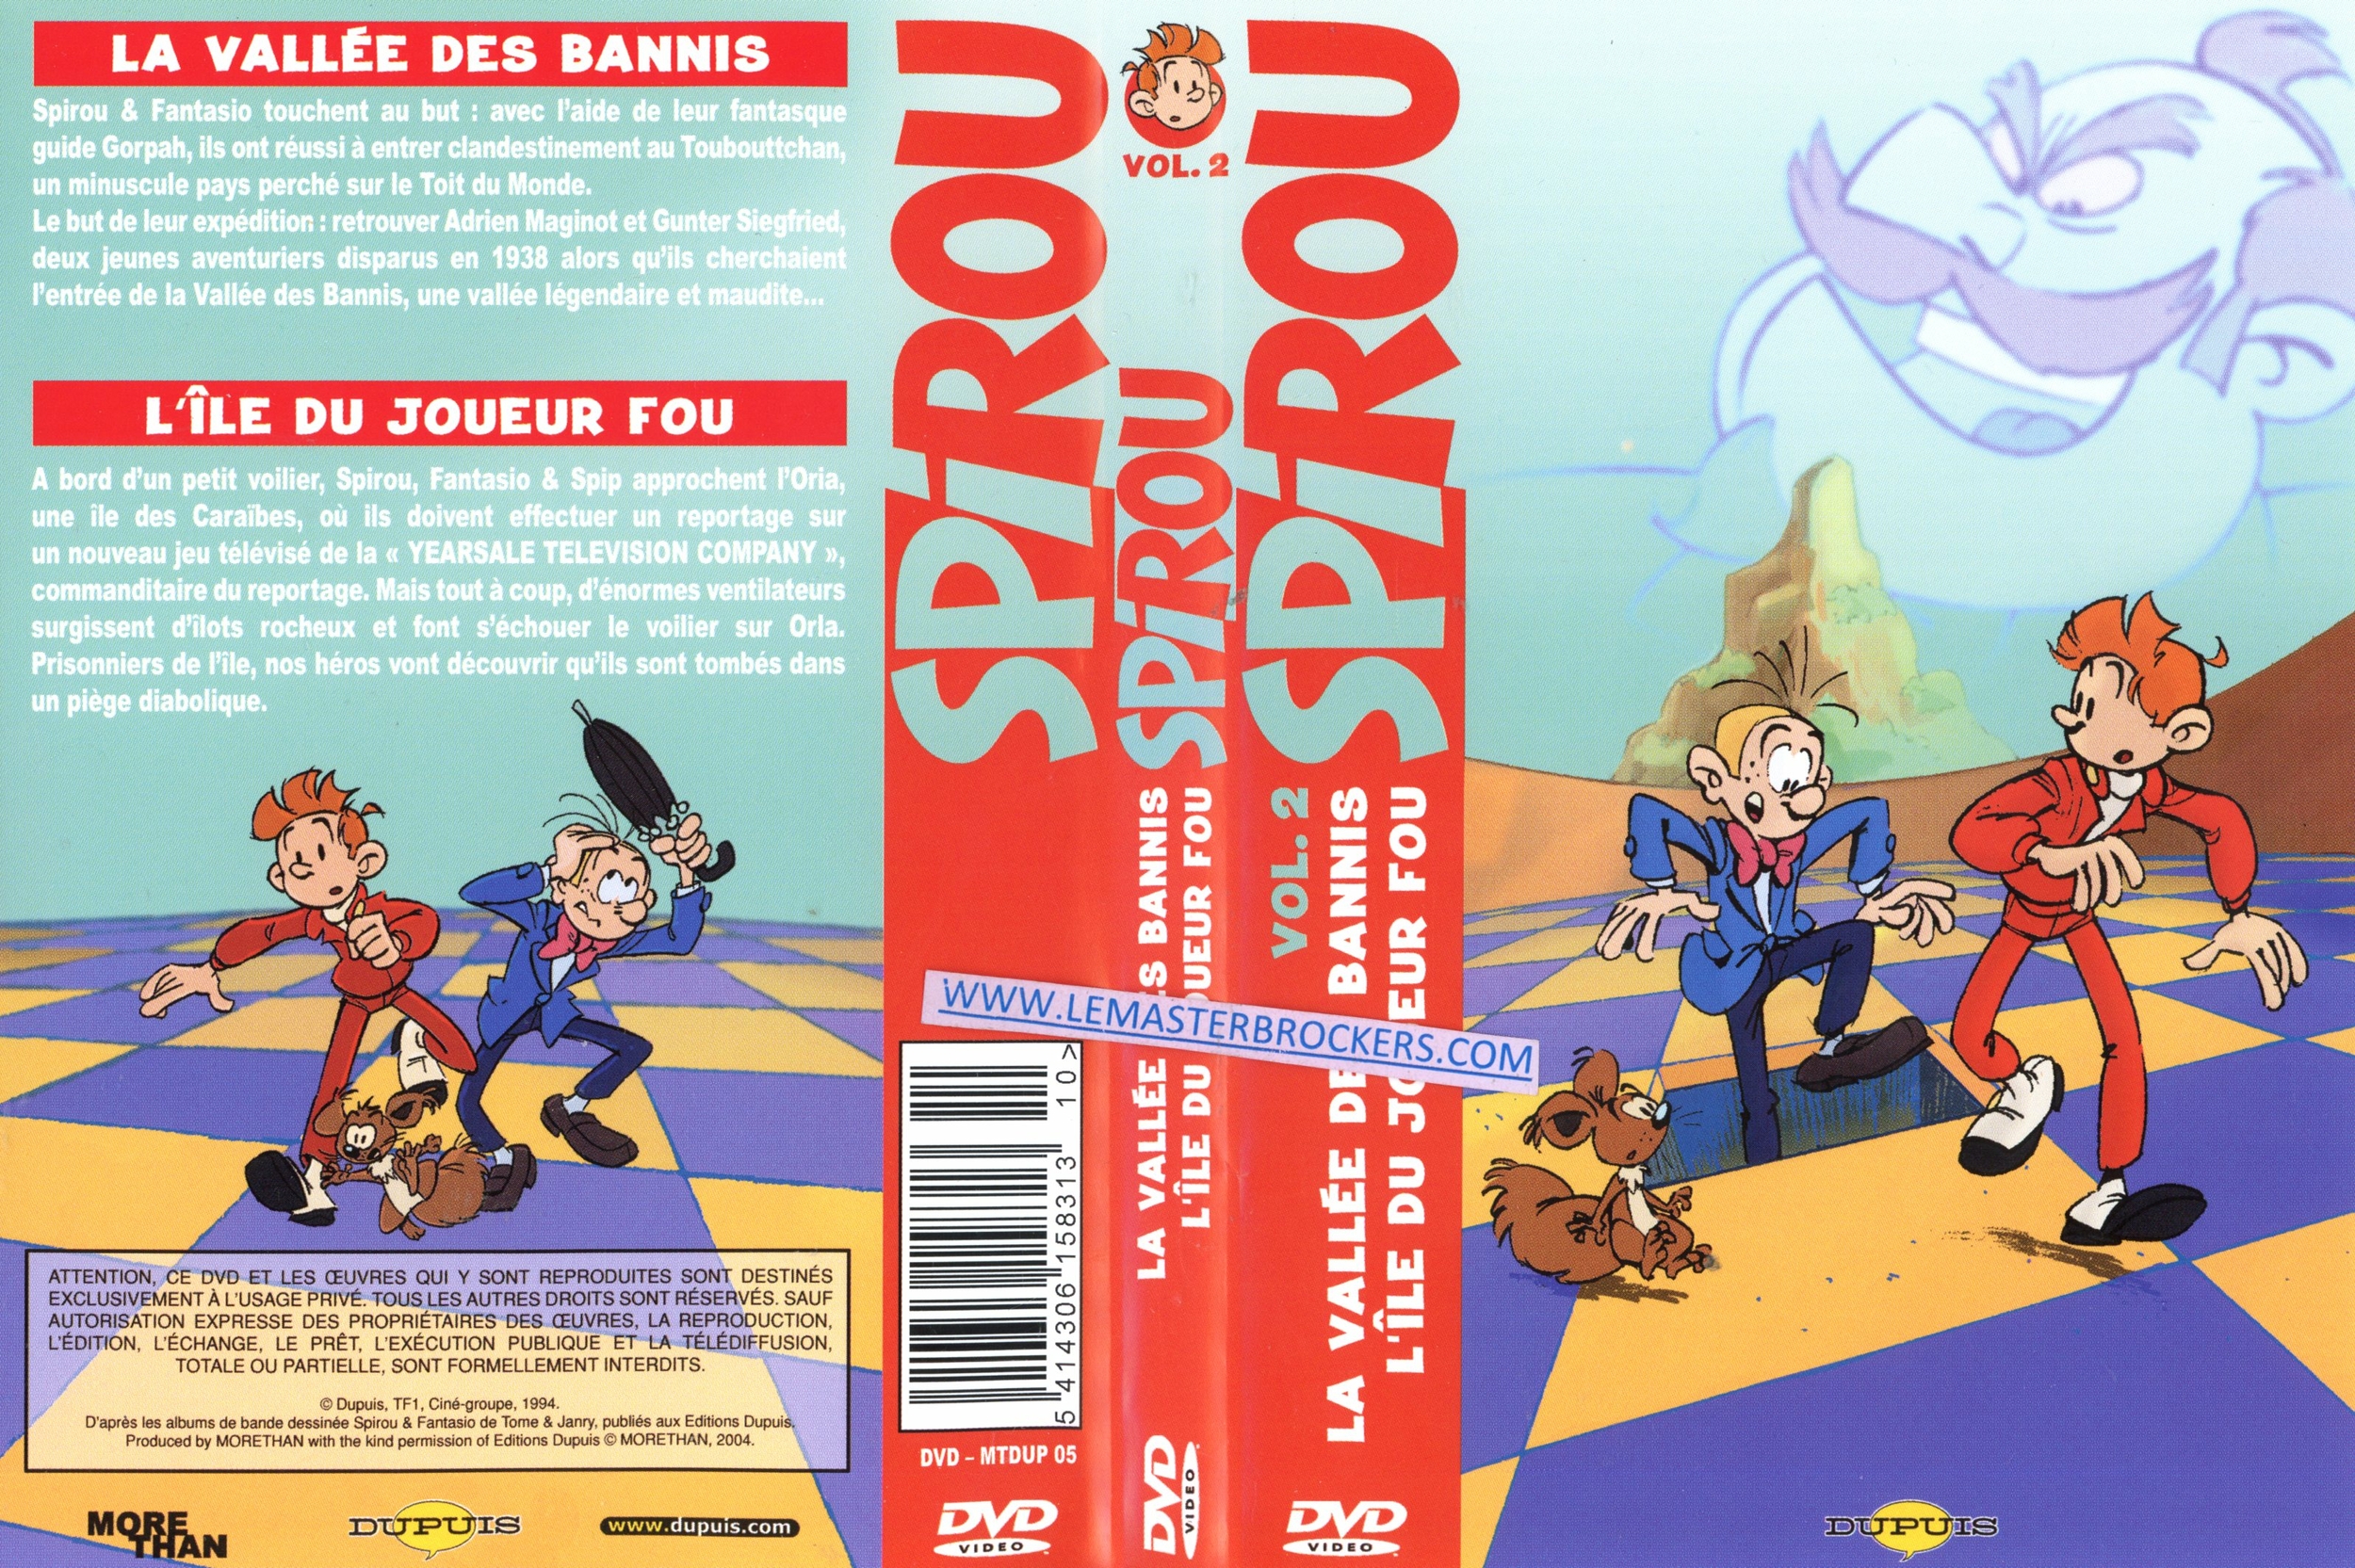 SPIROU LA VALLEE DES BANNIS - ILE DU JOUEUR FOU - DVD VOLUME 2